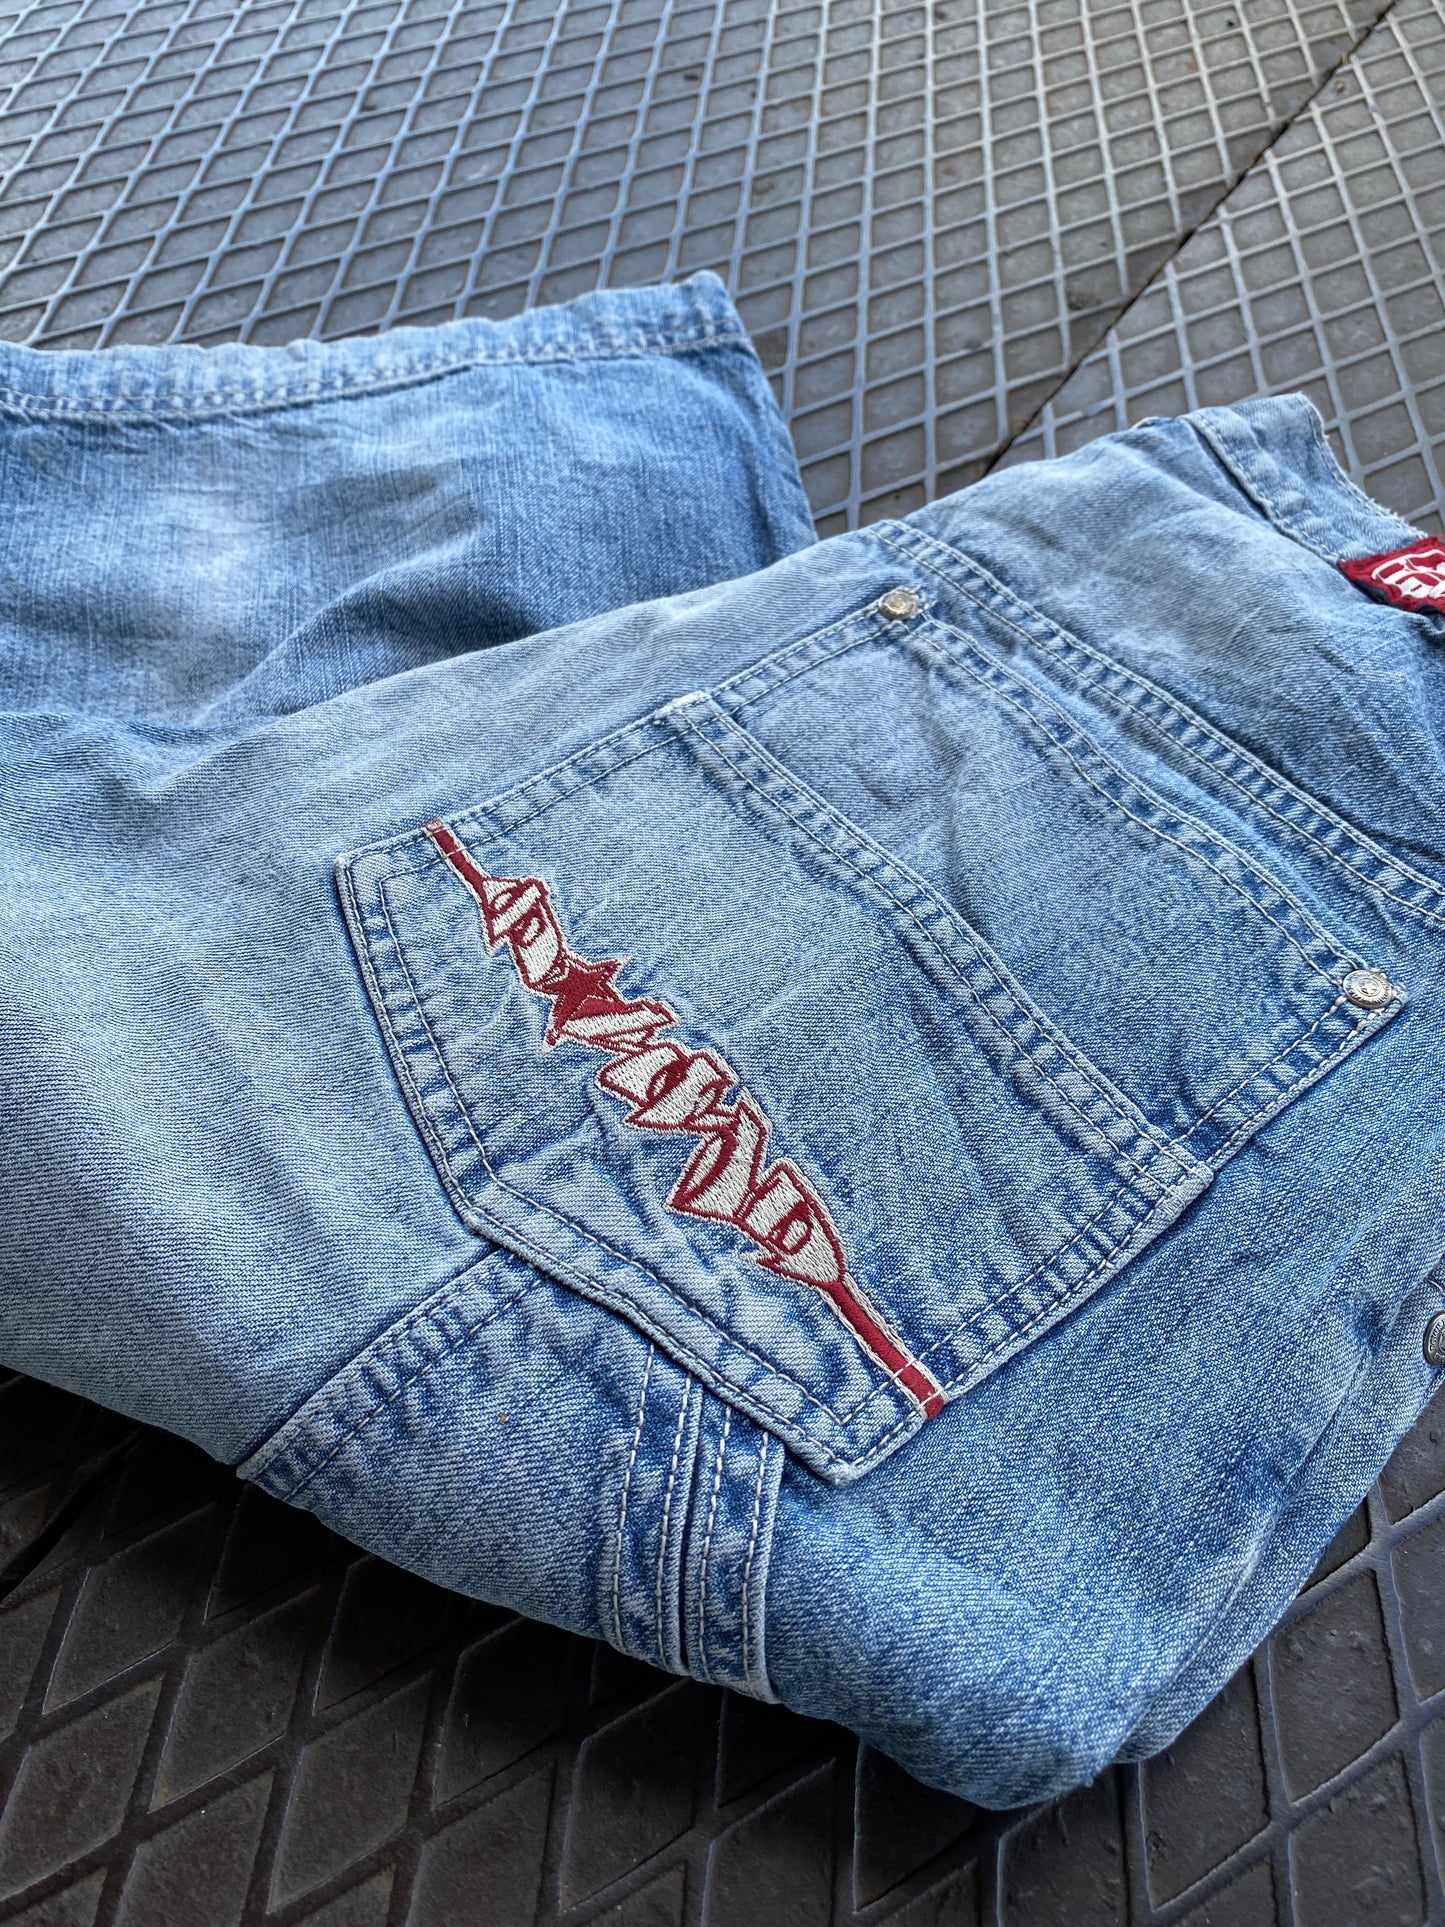 28 - Download Light Blue Denim Cargo Shorts Embroidered Pocket